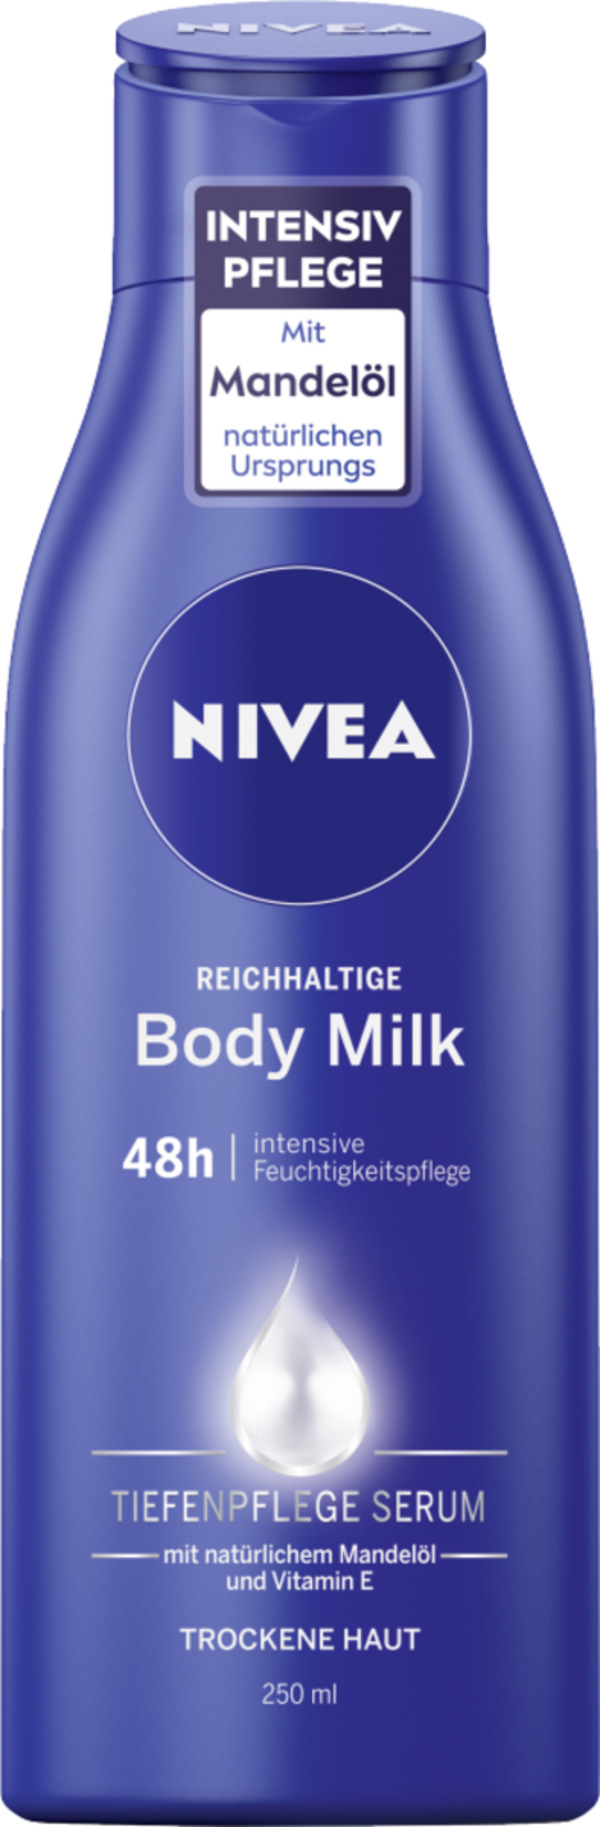 Bild 1 von NIVEA reichhaltige Body Milk